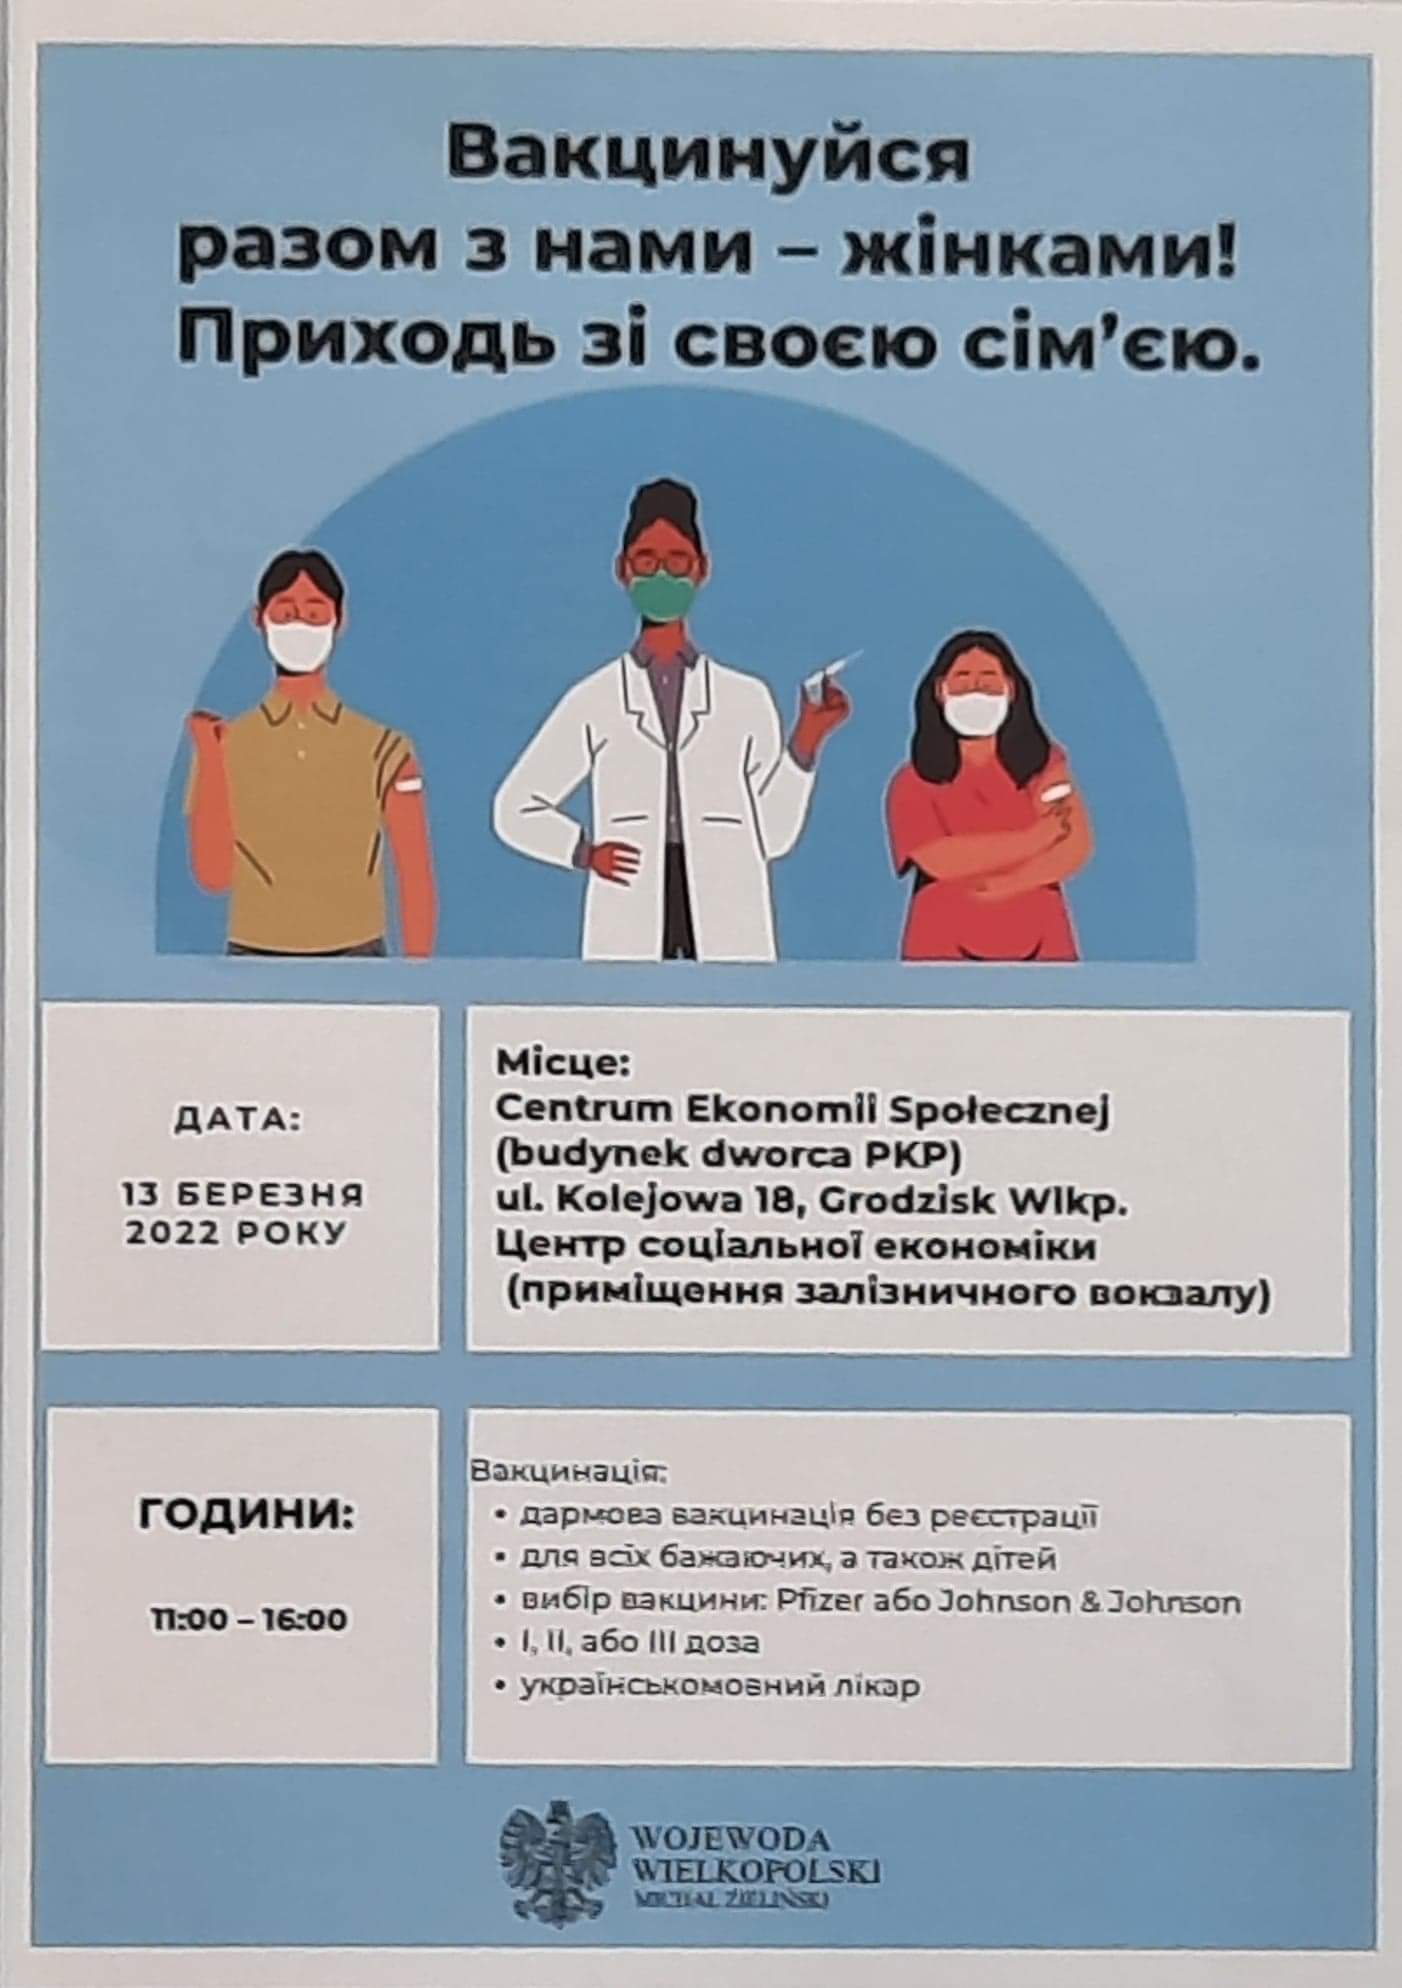 szczepienia przeciw covid-19, 13 marca 2022 godz. 11.00 - 16.00